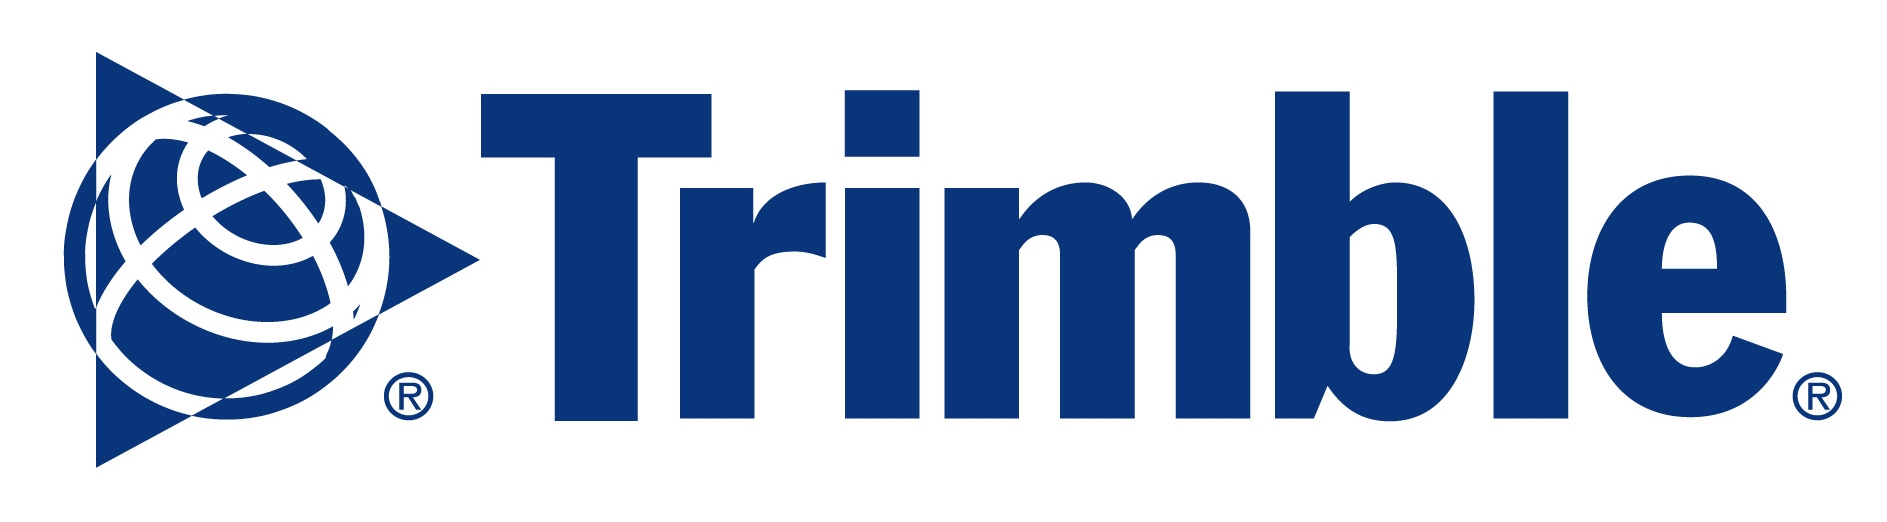 Логотип Trimble